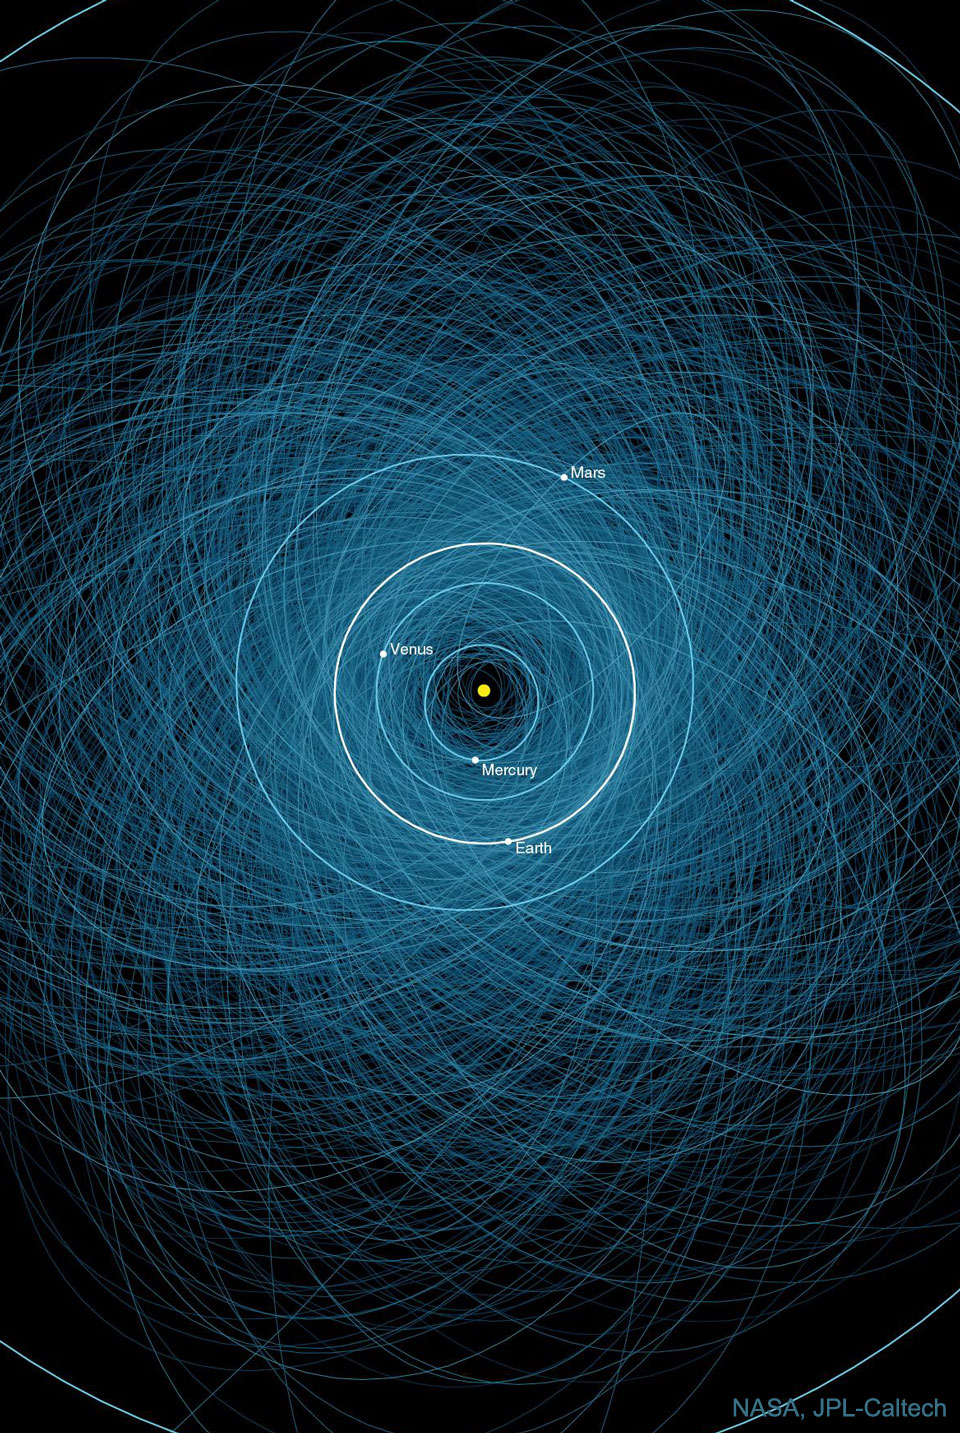 Obraz przedstawia ilustrację orbit potencjalnie niebezpiecznych planetoid, które mogą, w odległej przyszłości, uderzyć w Ziemię. 
Więcej szczegółowych informacji w opisie poniżej.